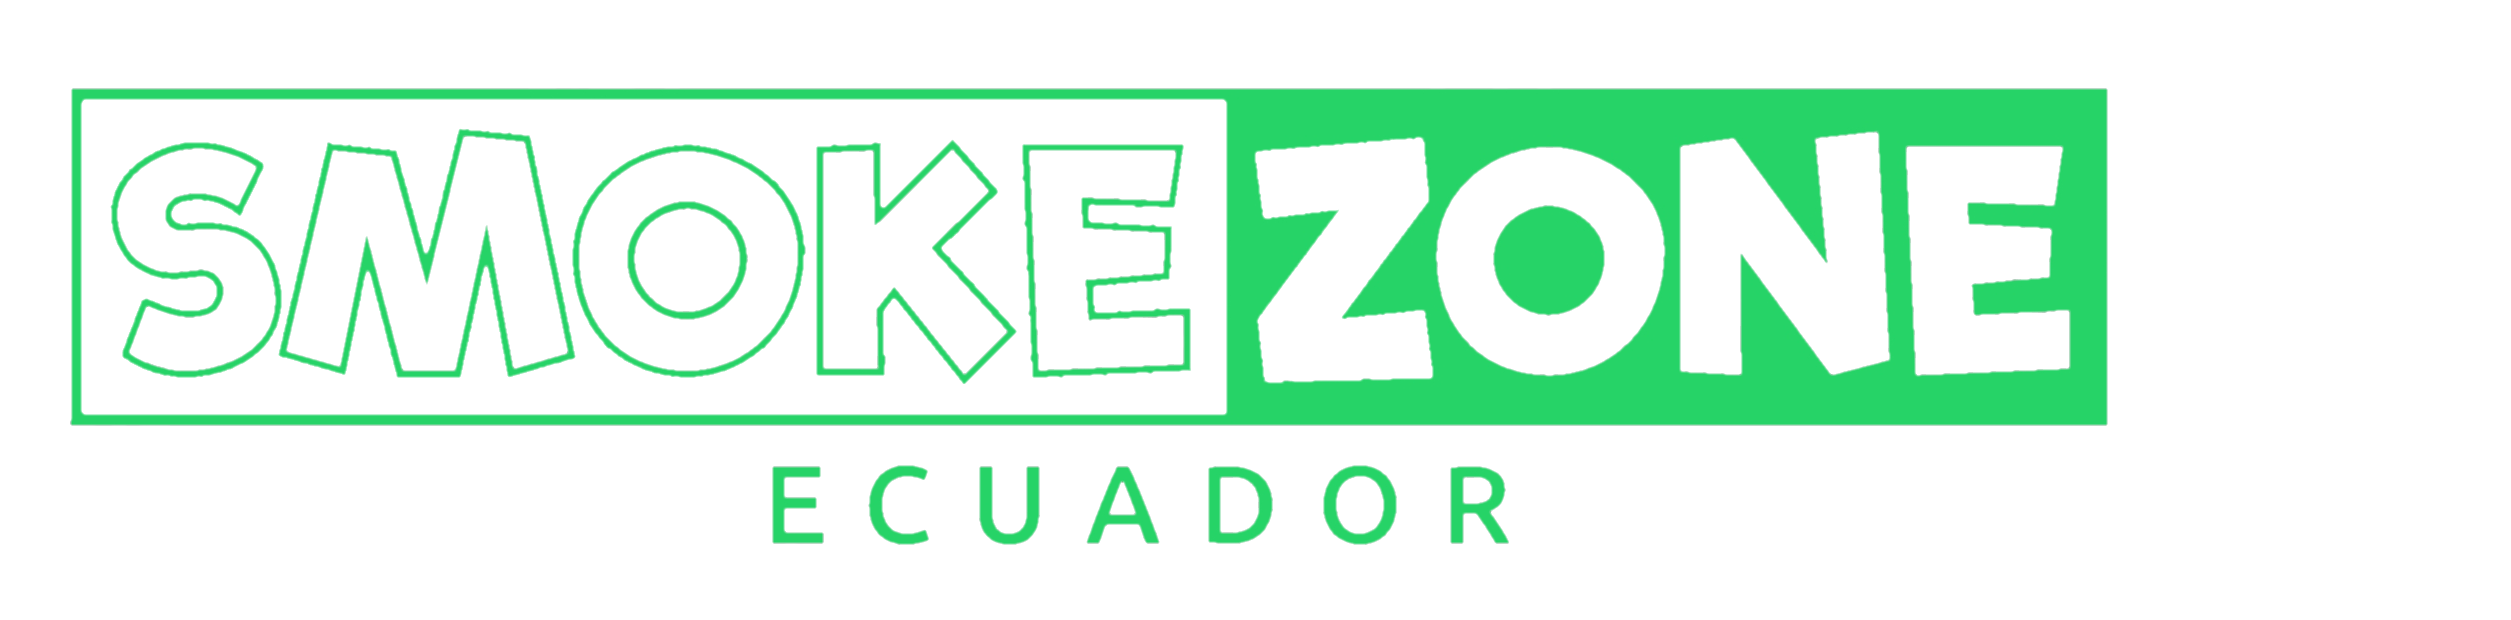 Smoke Zone Ecuador